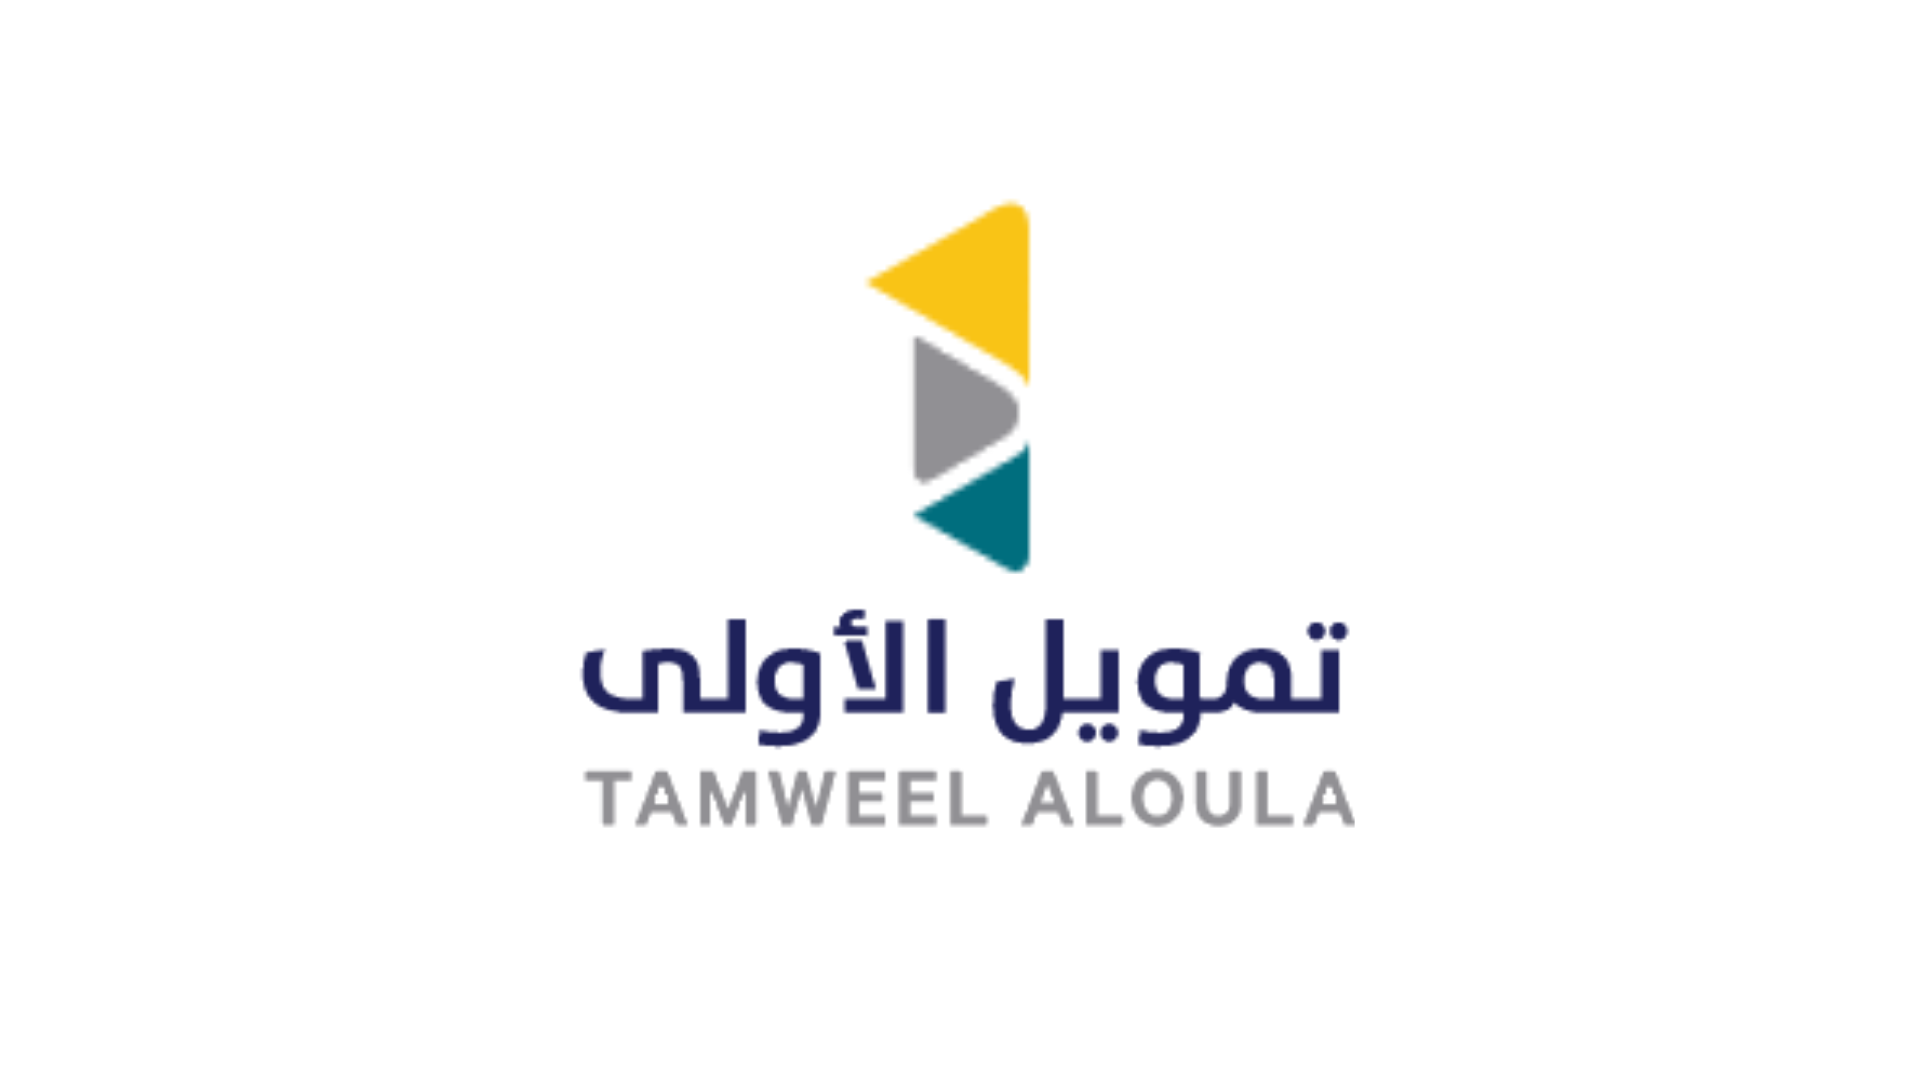 Tamweel Aloula